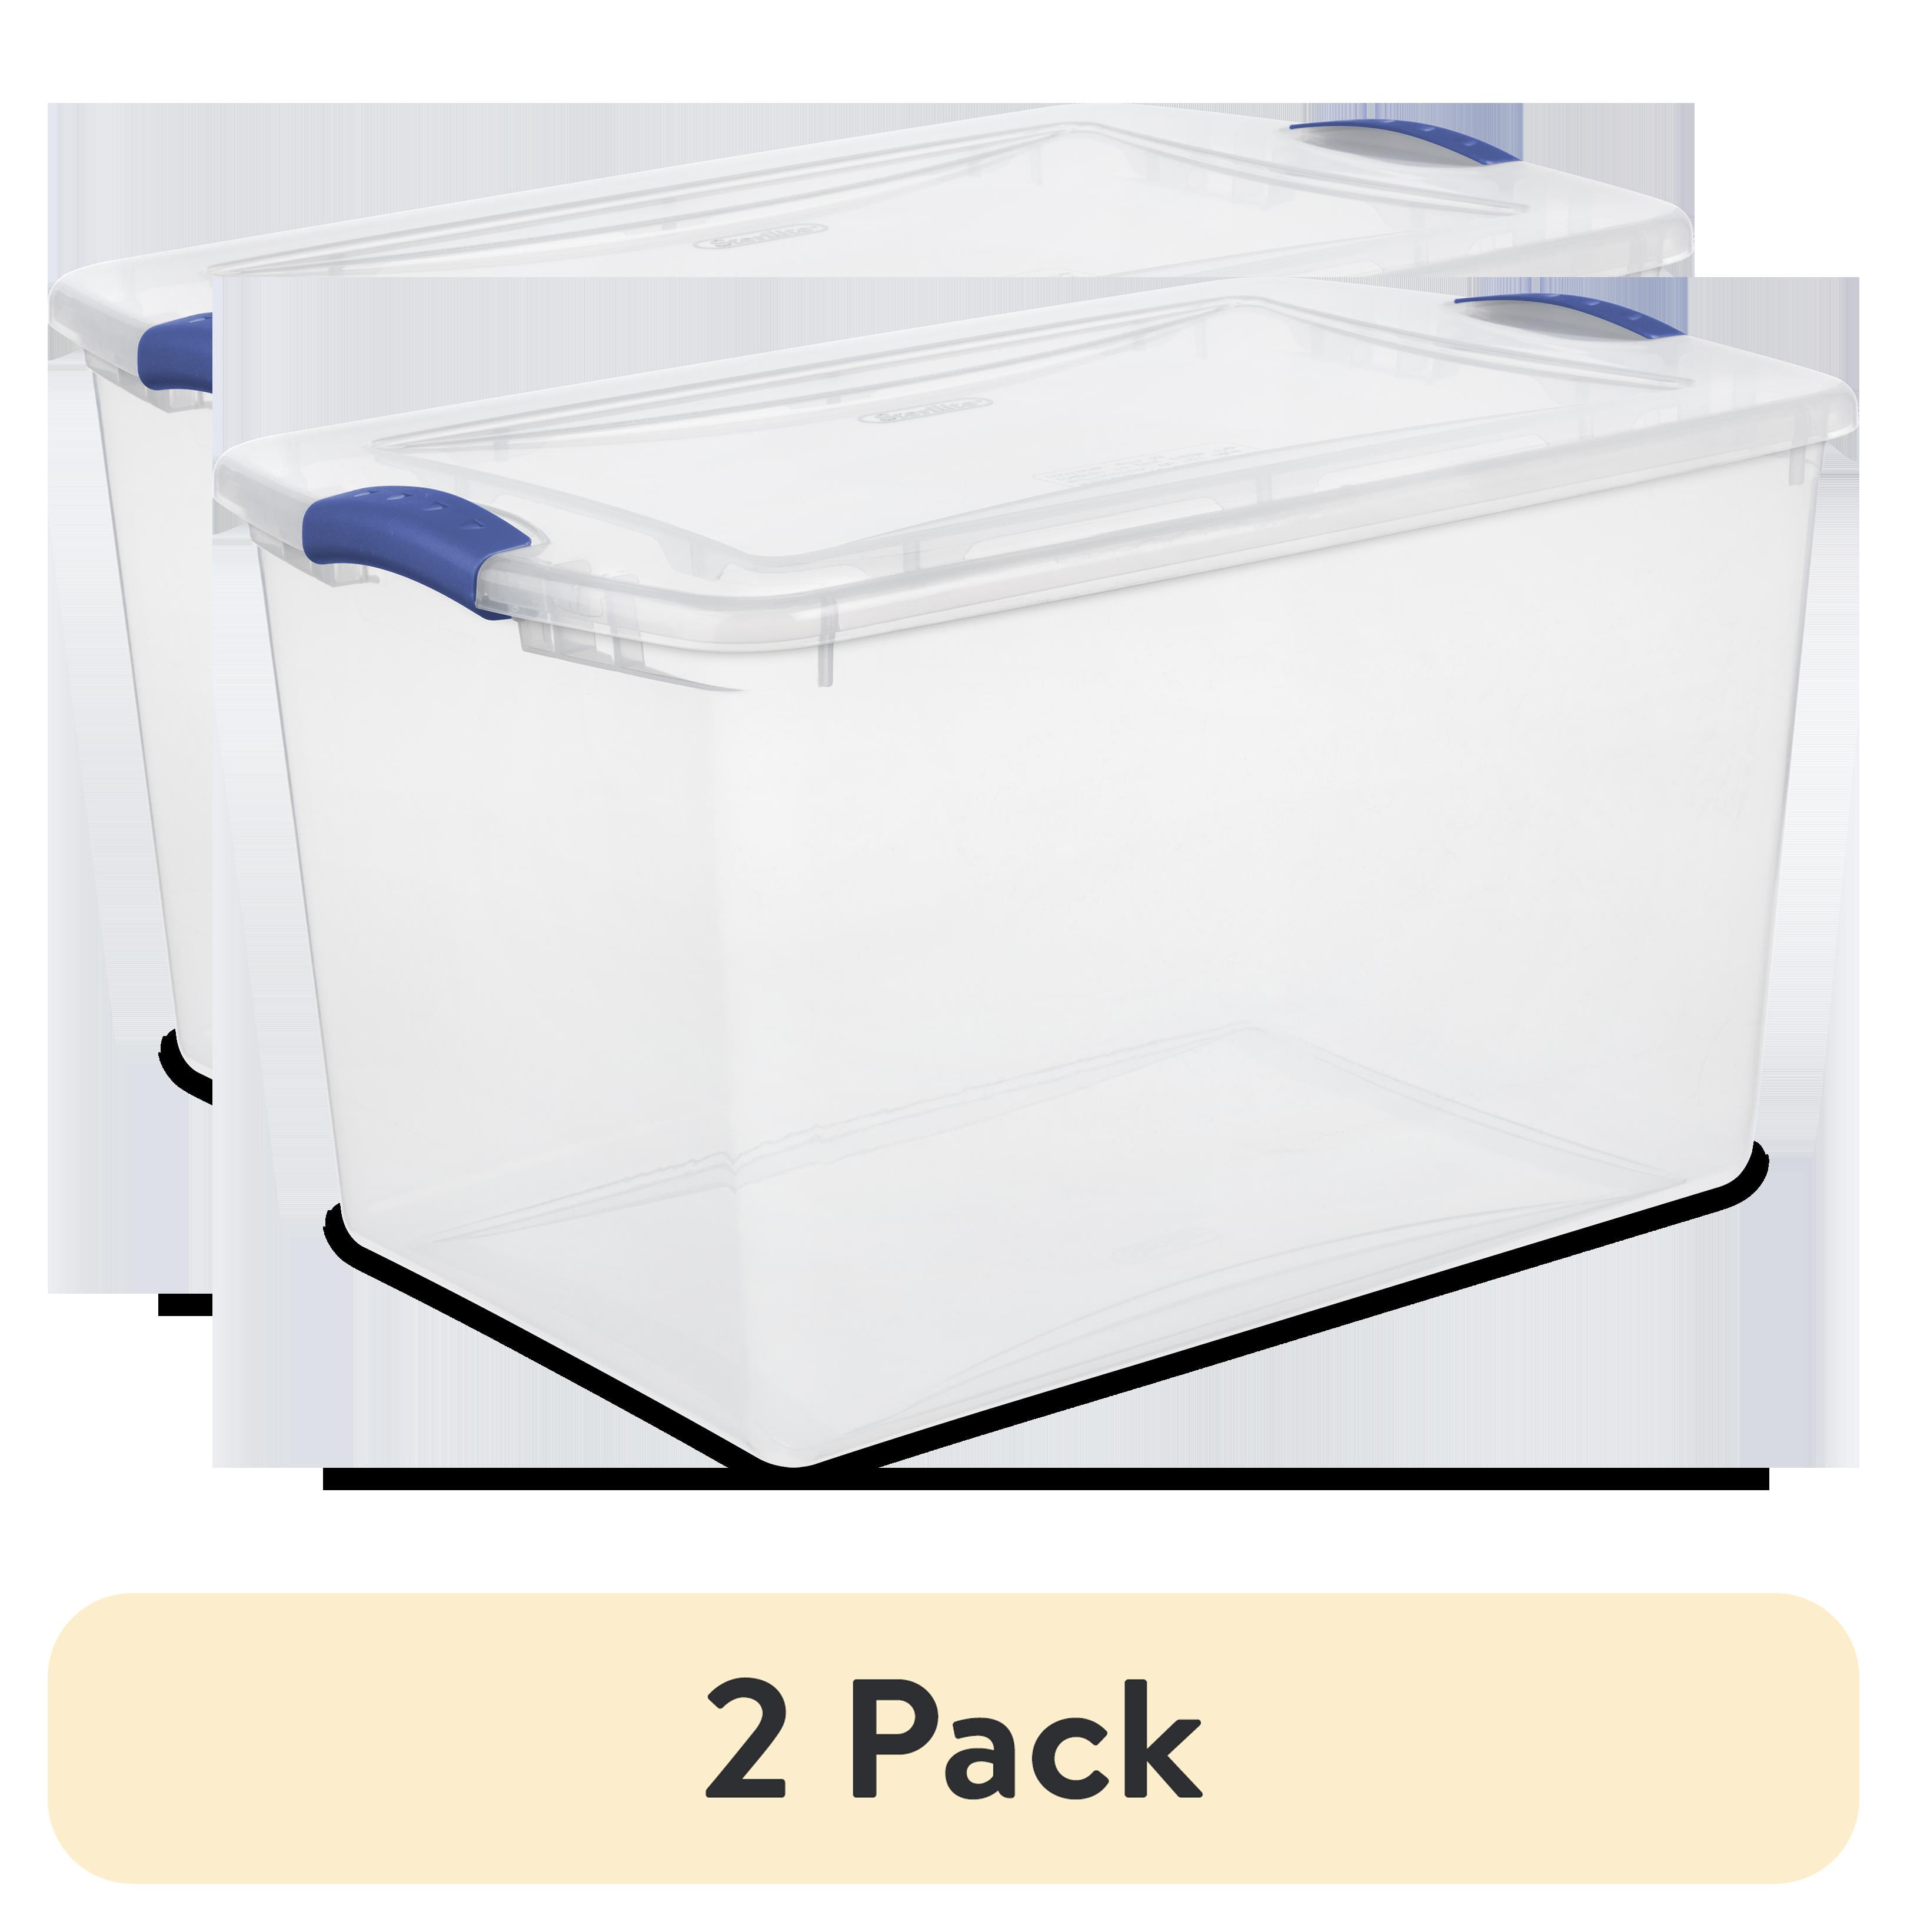 4 pack) Sterilite 66 Quart. Latch Box Plastic, Stadium Blue, Set of 6 